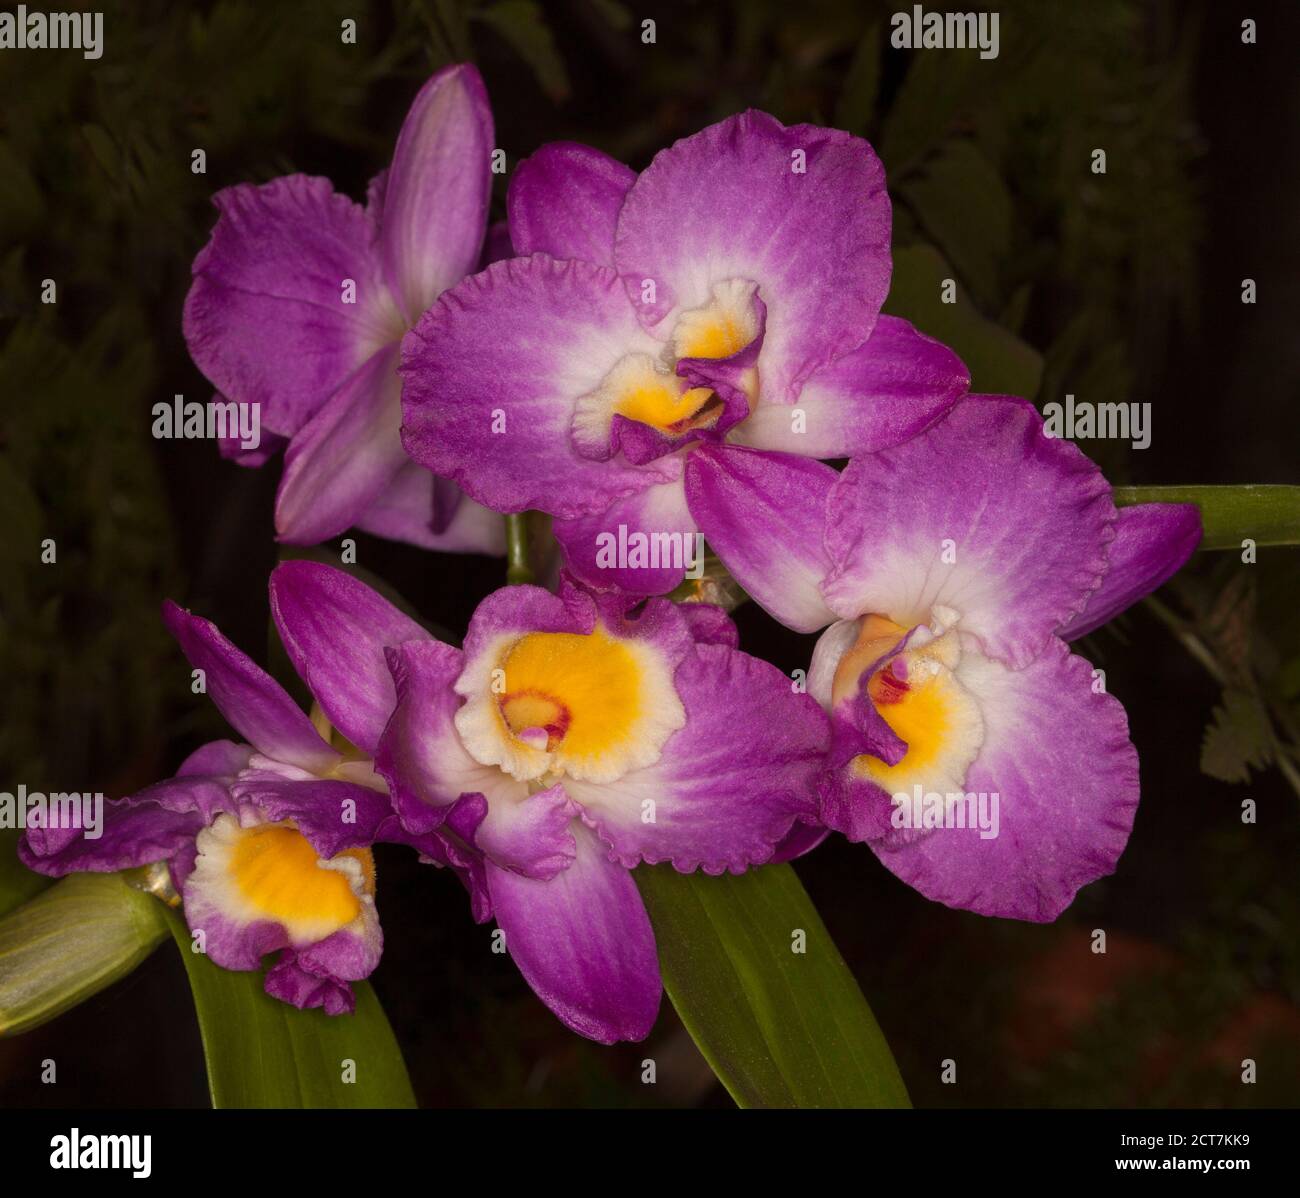 Ensemble de fleurs roses, blanches et jaunes vives de l'orchidée Dendrobium élégant sourire « Red Crest » sur fond sombre Banque D'Images